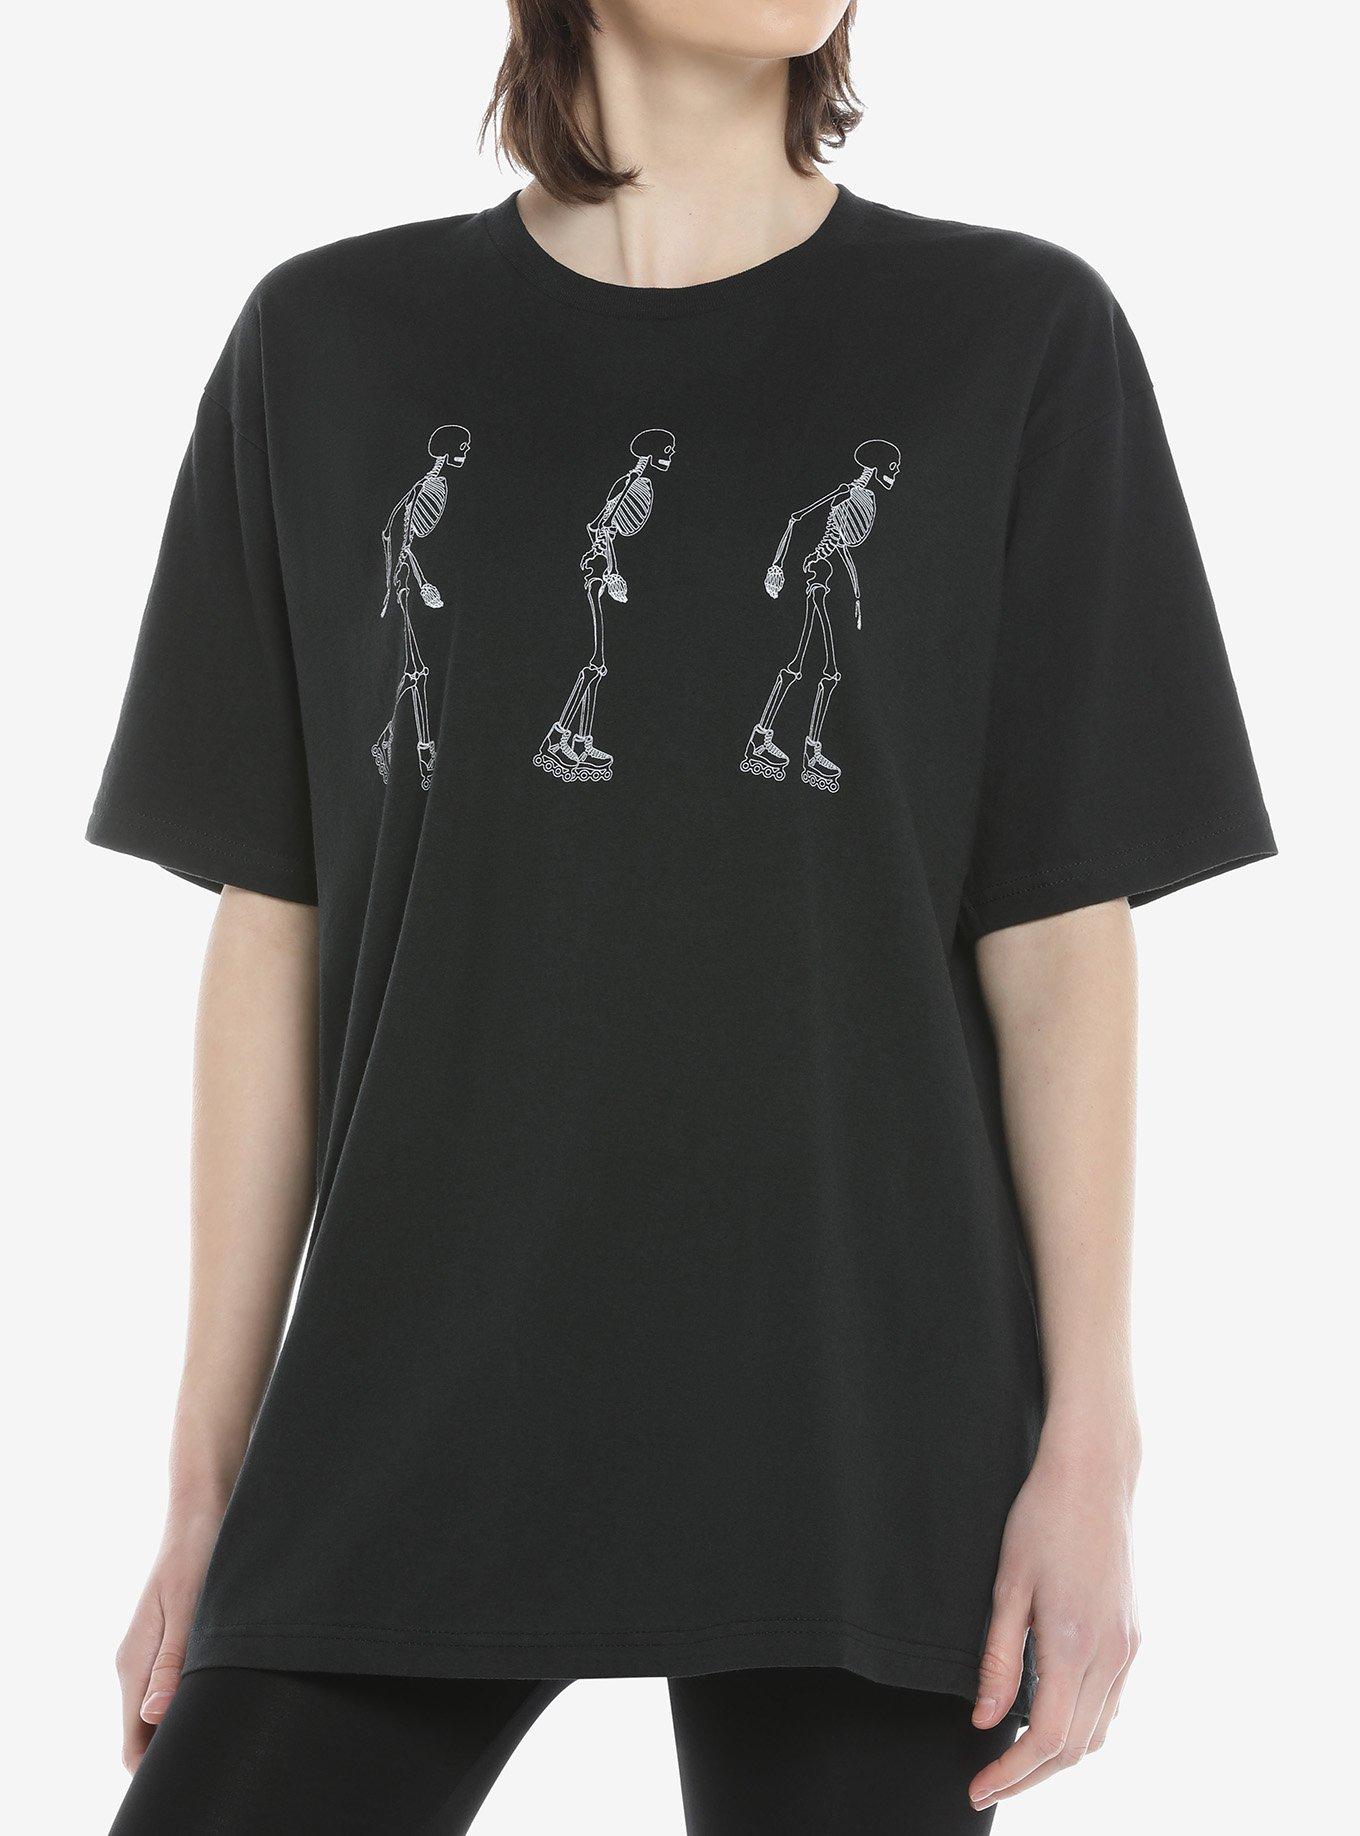 Skeleton Skate Oversized Girls T-Shirt | Hot Topic